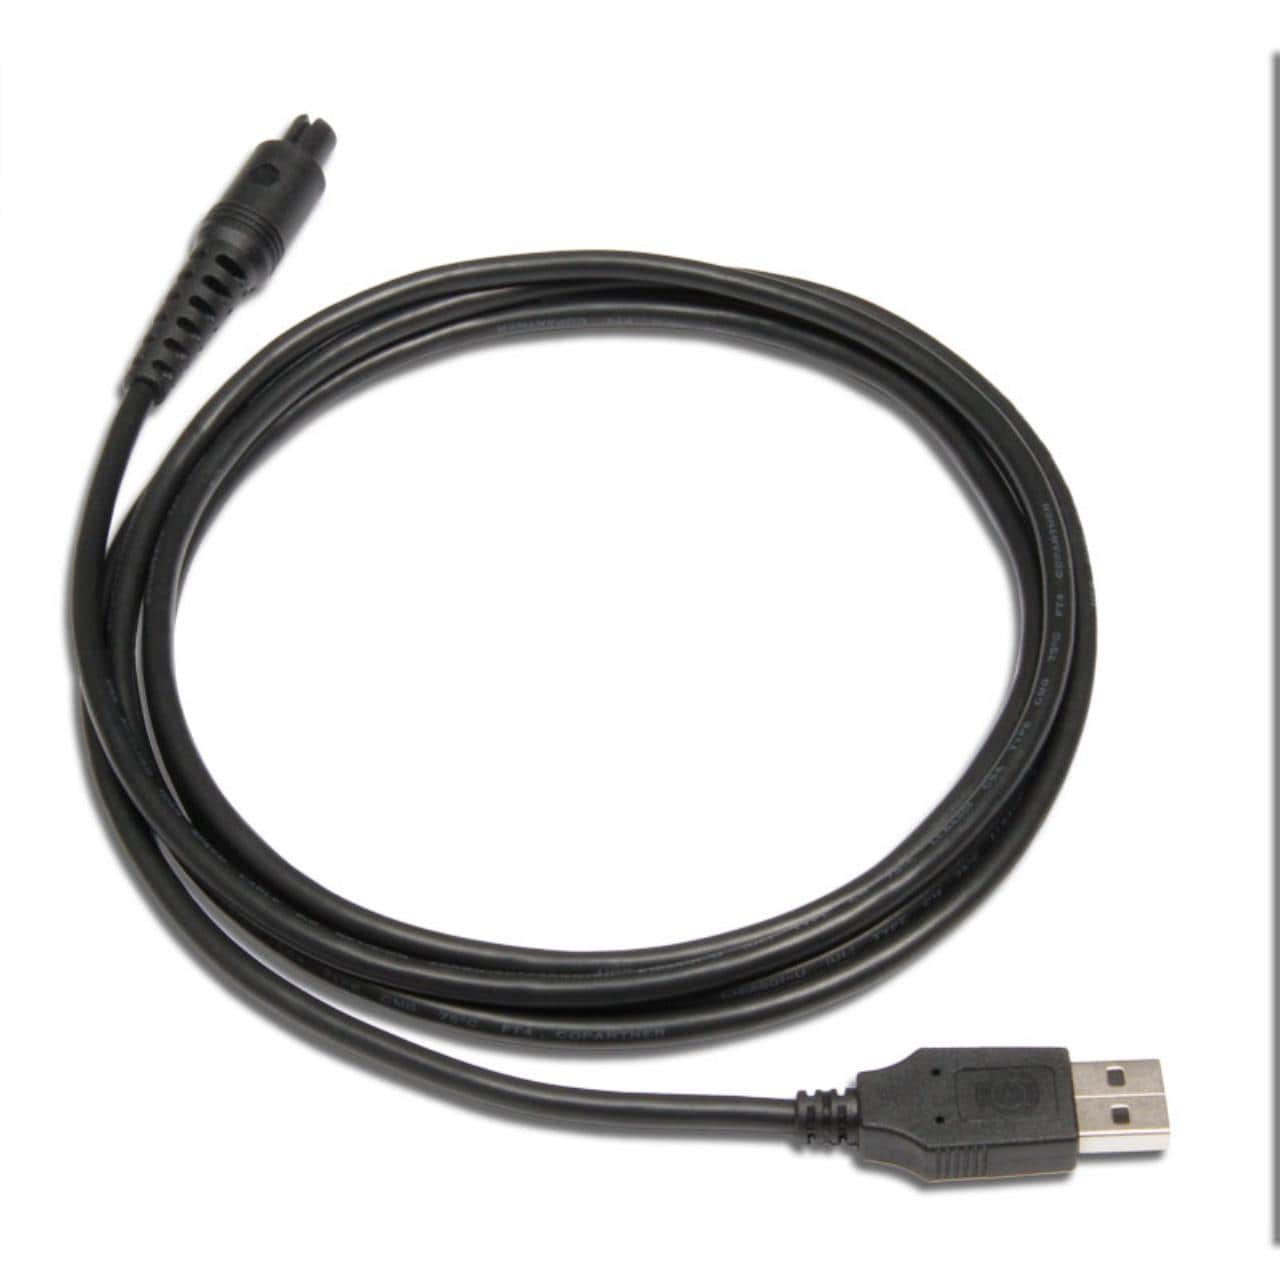 USB Cable for UniGo